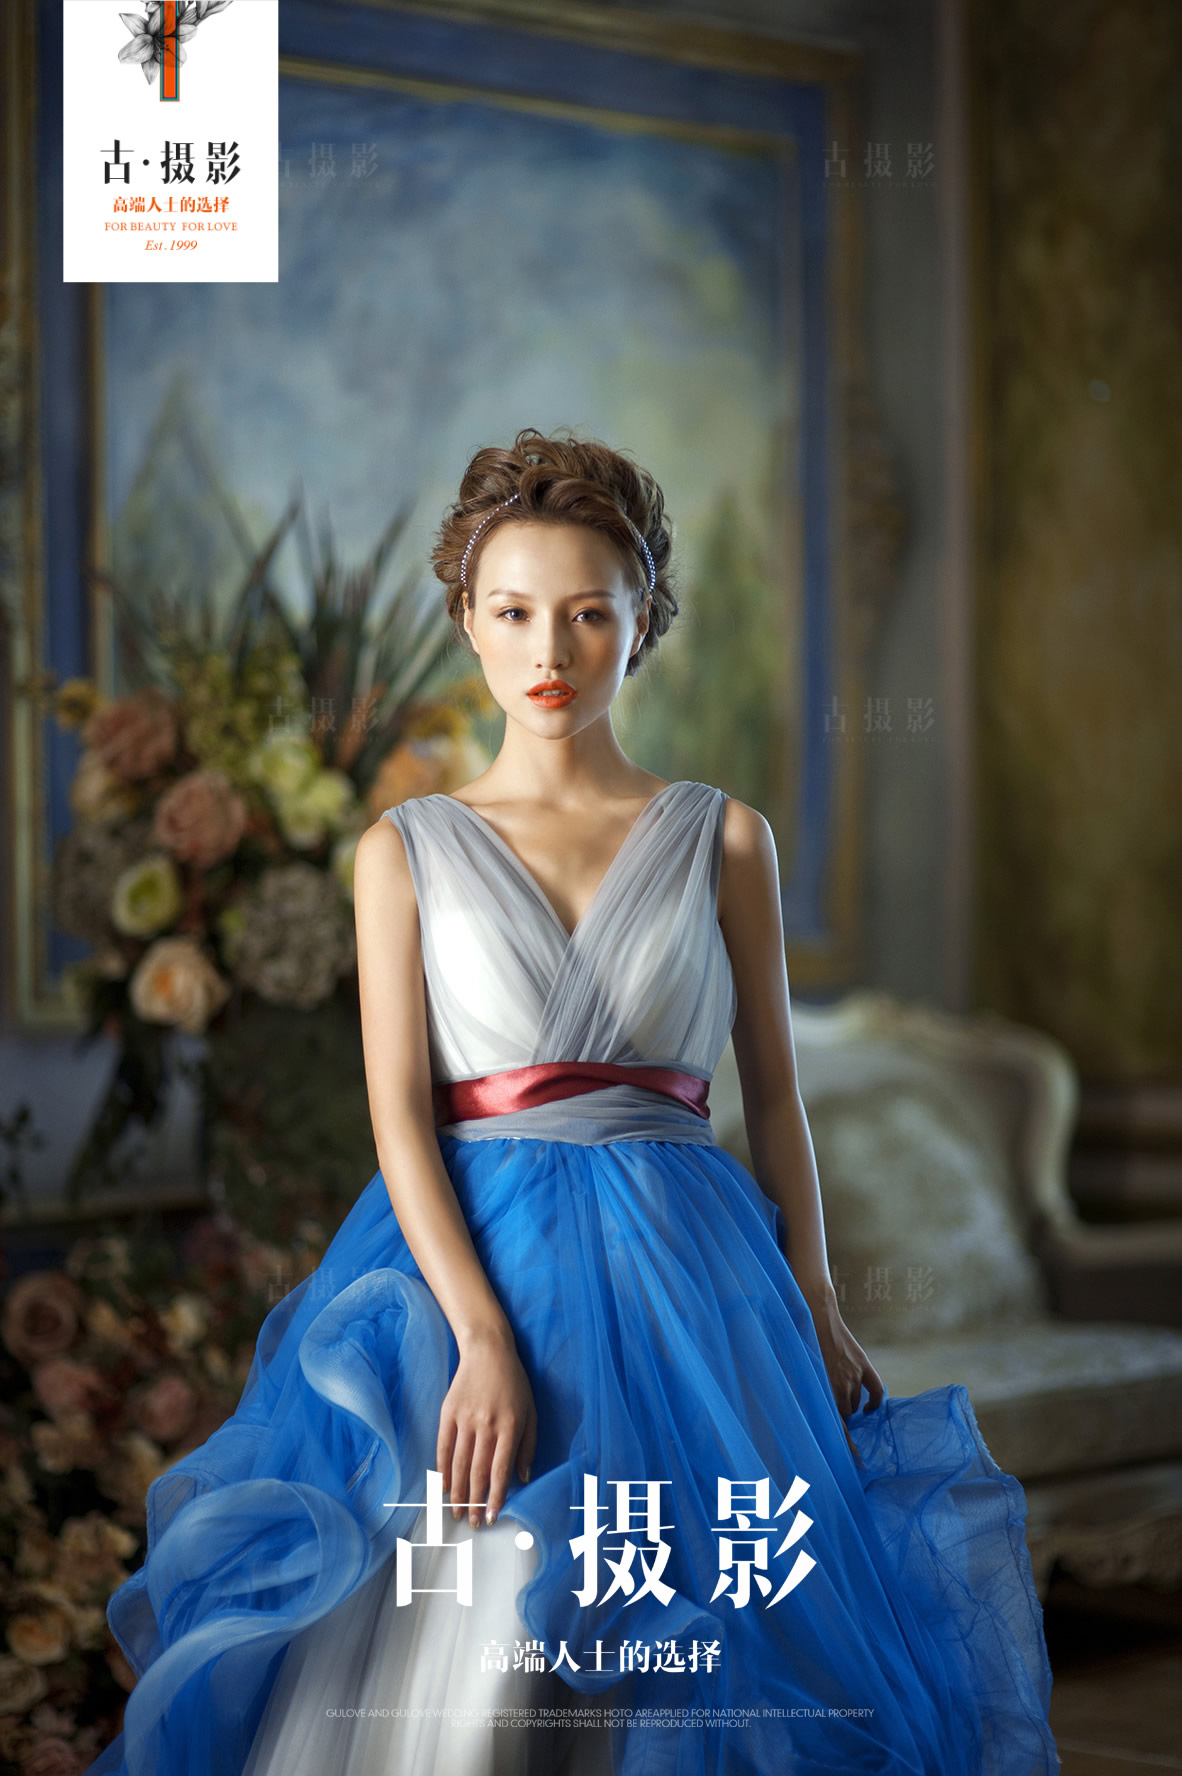 经典《蓝色经典》系列 - 明星范 - 古摄影婚纱艺术-古摄影成都婚纱摄影艺术摄影网